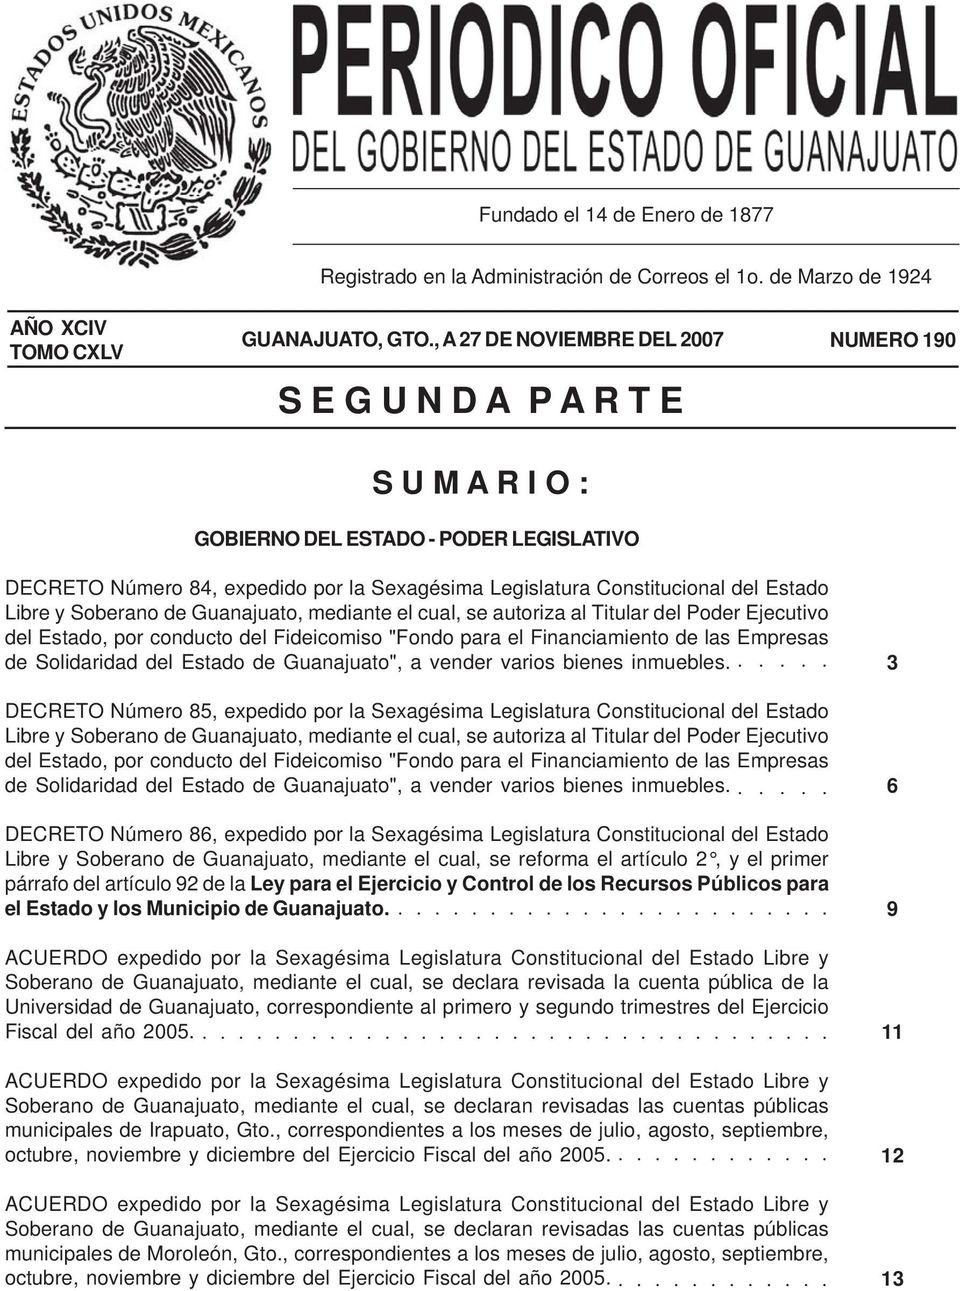 Estado Libre y Soberano de Guanajuato, mediante el cual, se autoriza al Titular del Poder Ejecutivo del Estado, por conducto del Fideicomiso "Fondo para el Financiamiento de las Empresas de